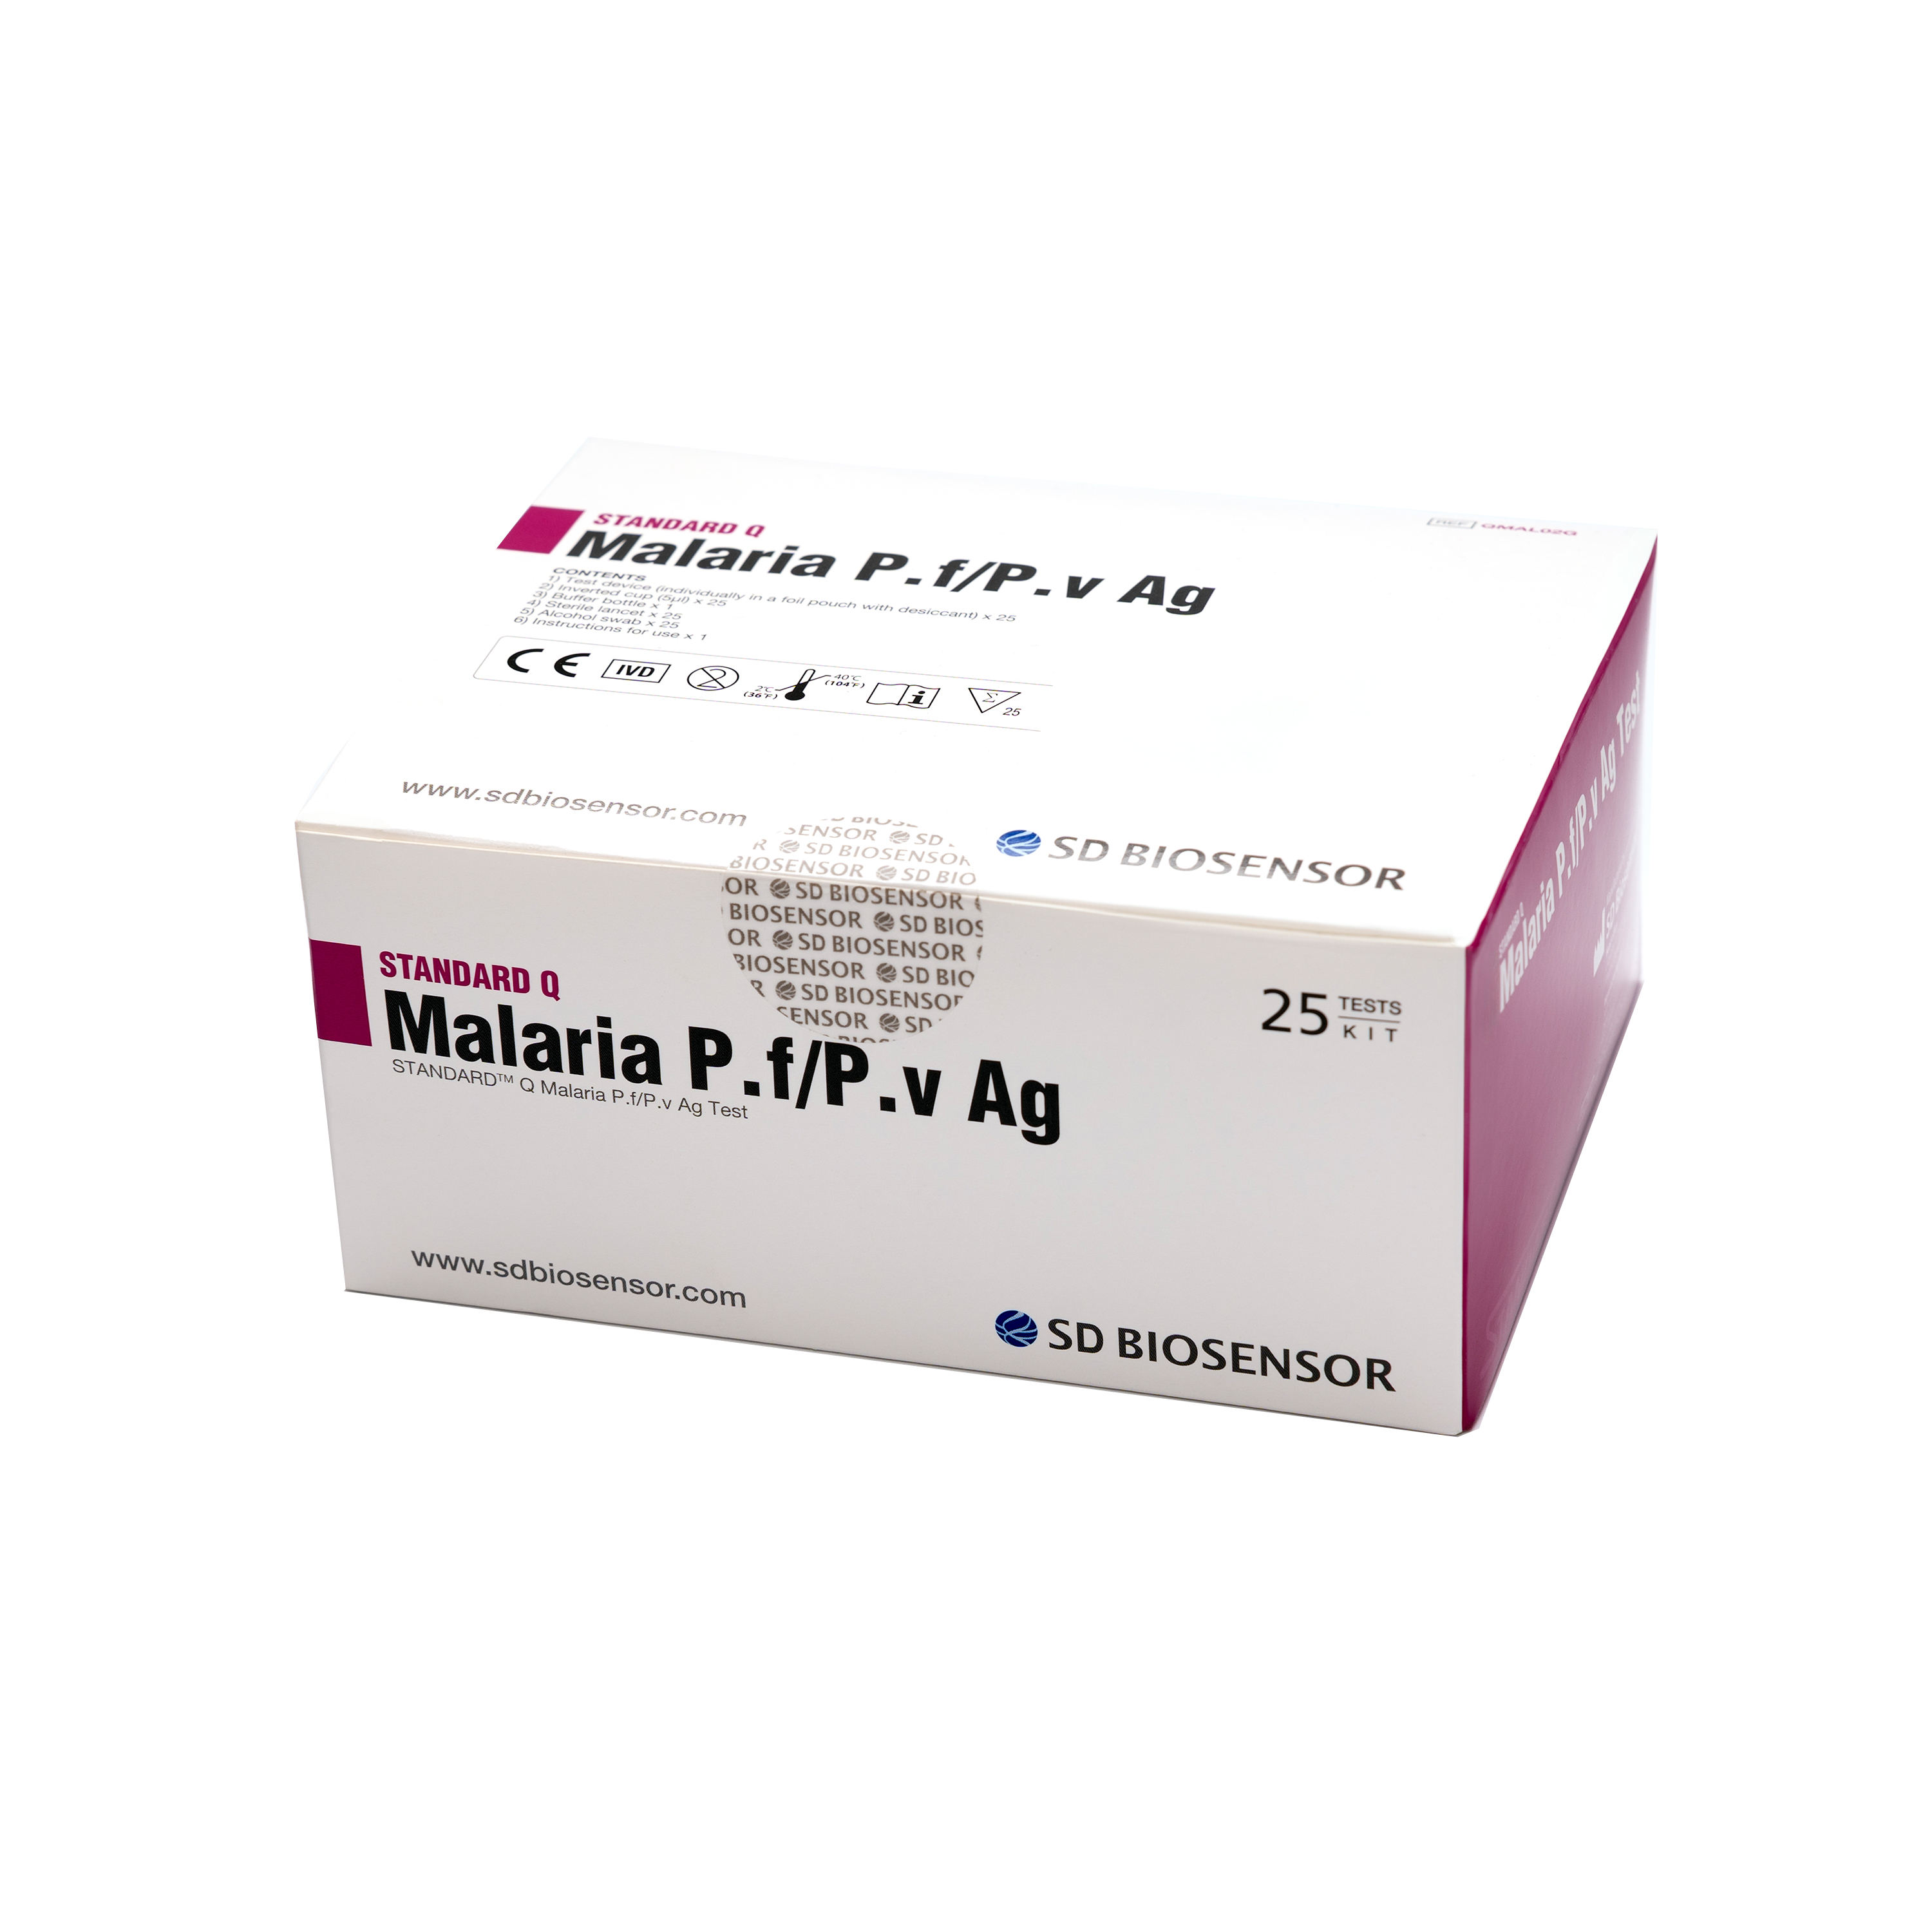 Standard Q Malaria P.f/P.v Ag Reagenzienkit (25 Stk.)